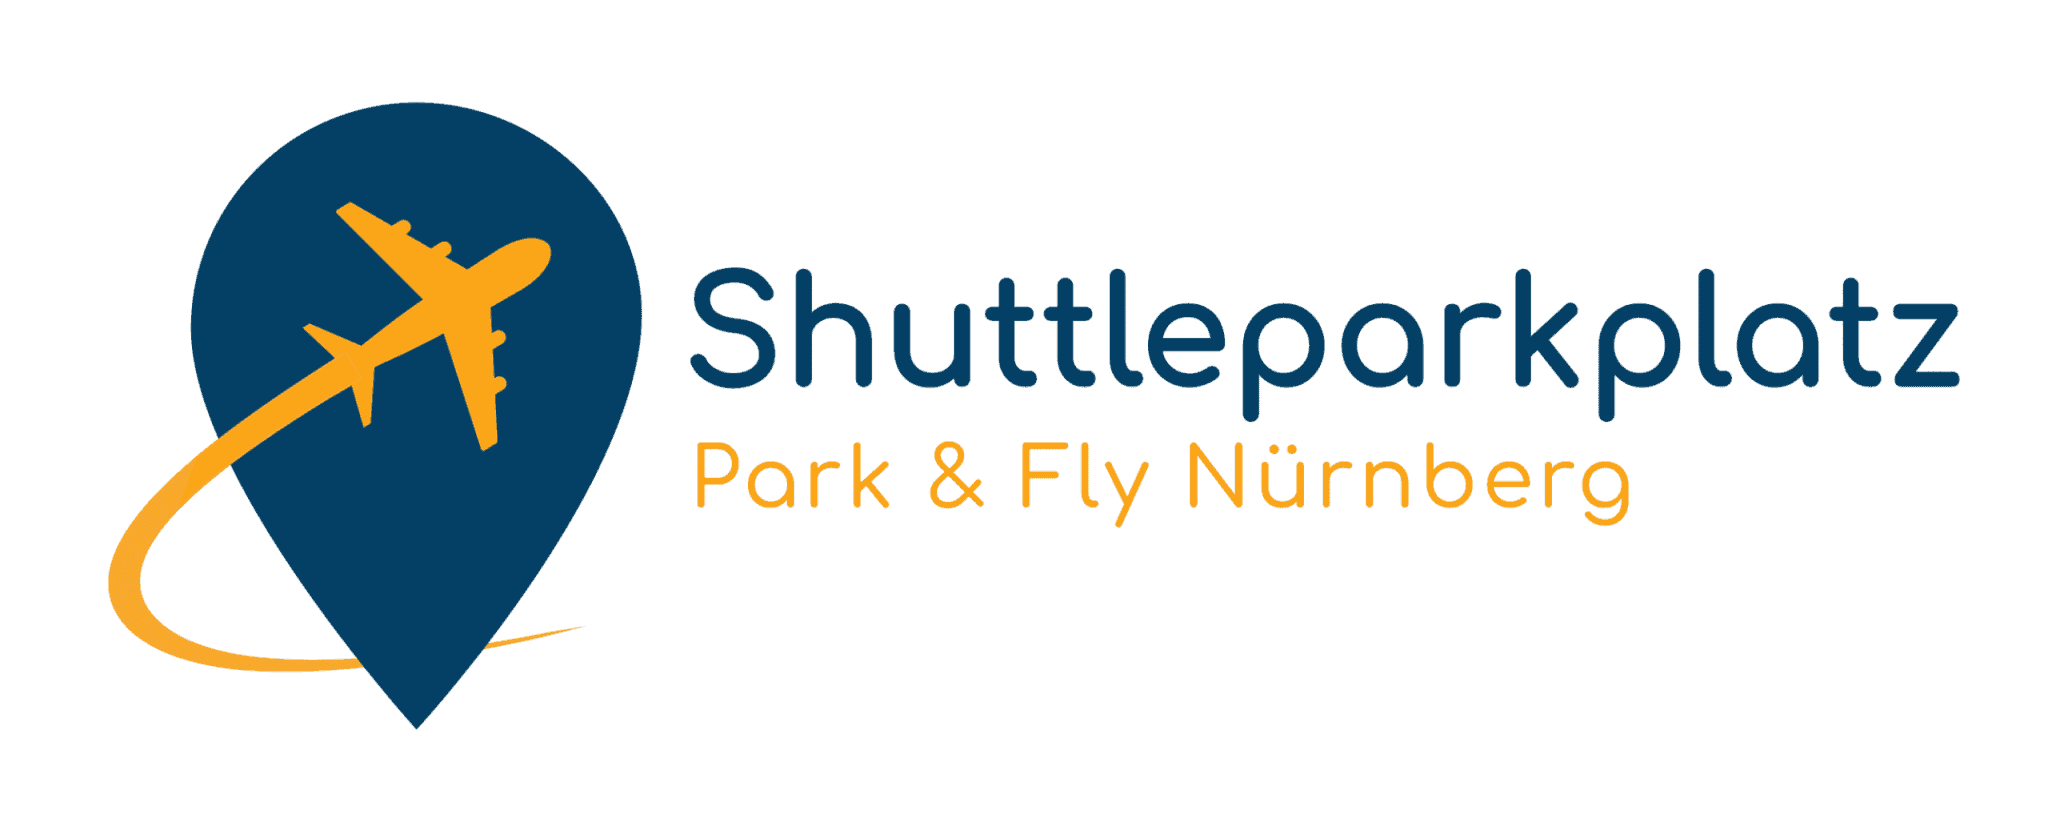 Shuttleparkplatz Nürnberg logo3